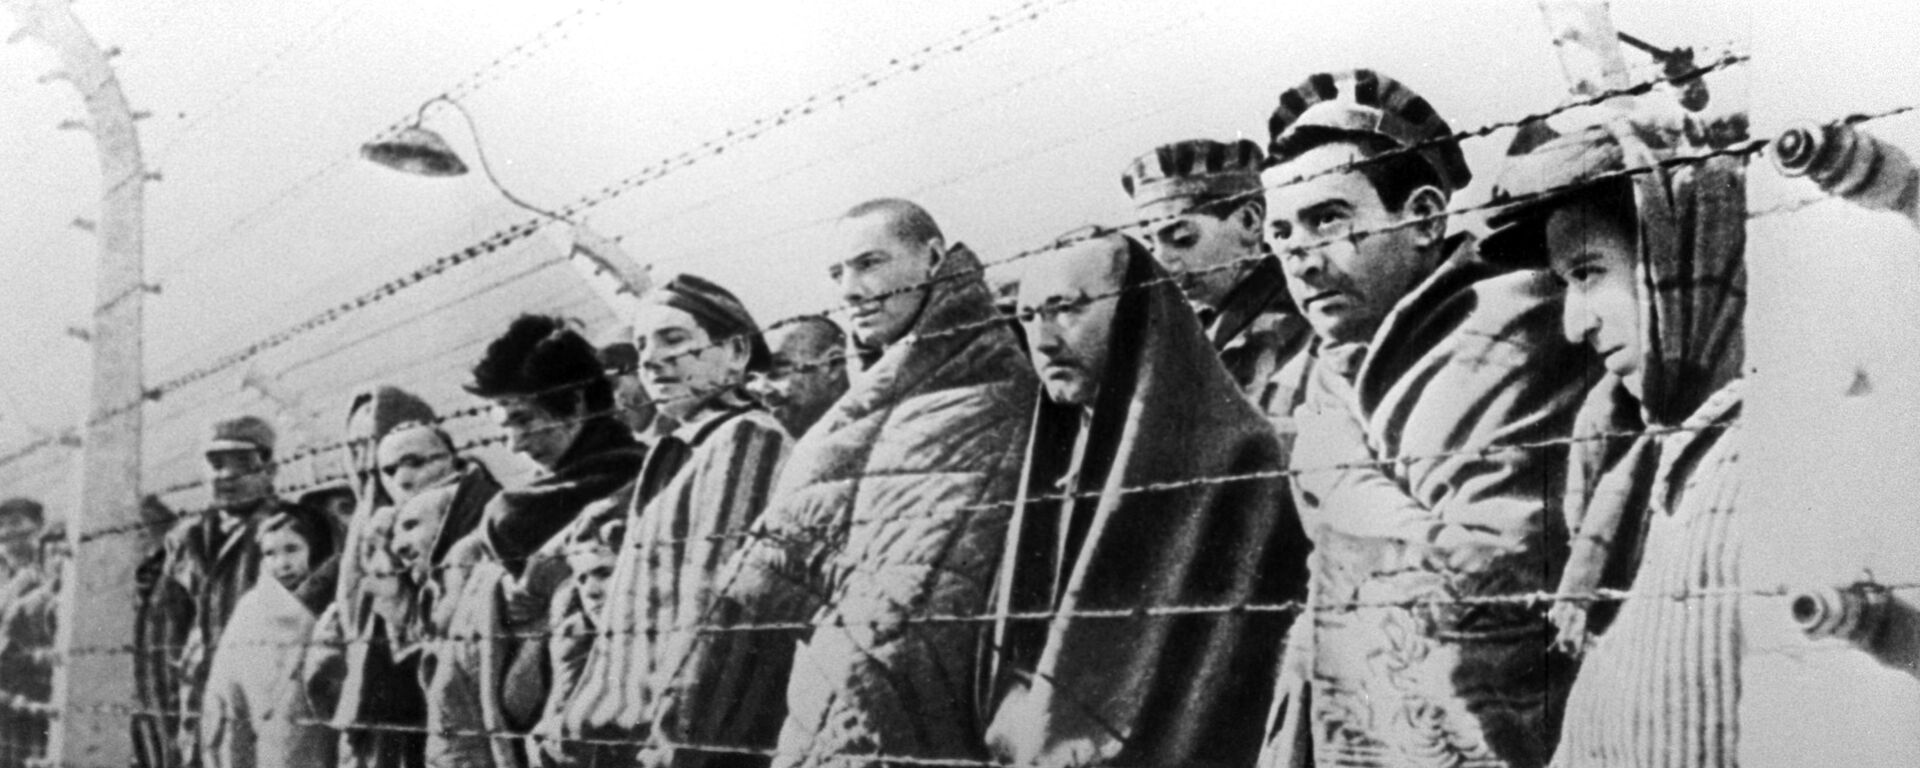 Узники концентрационного лагеря Освенцим, освобожденные войсками Красной армии в январе 1945 года - Sputnik Узбекистан, 1920, 24.01.2020